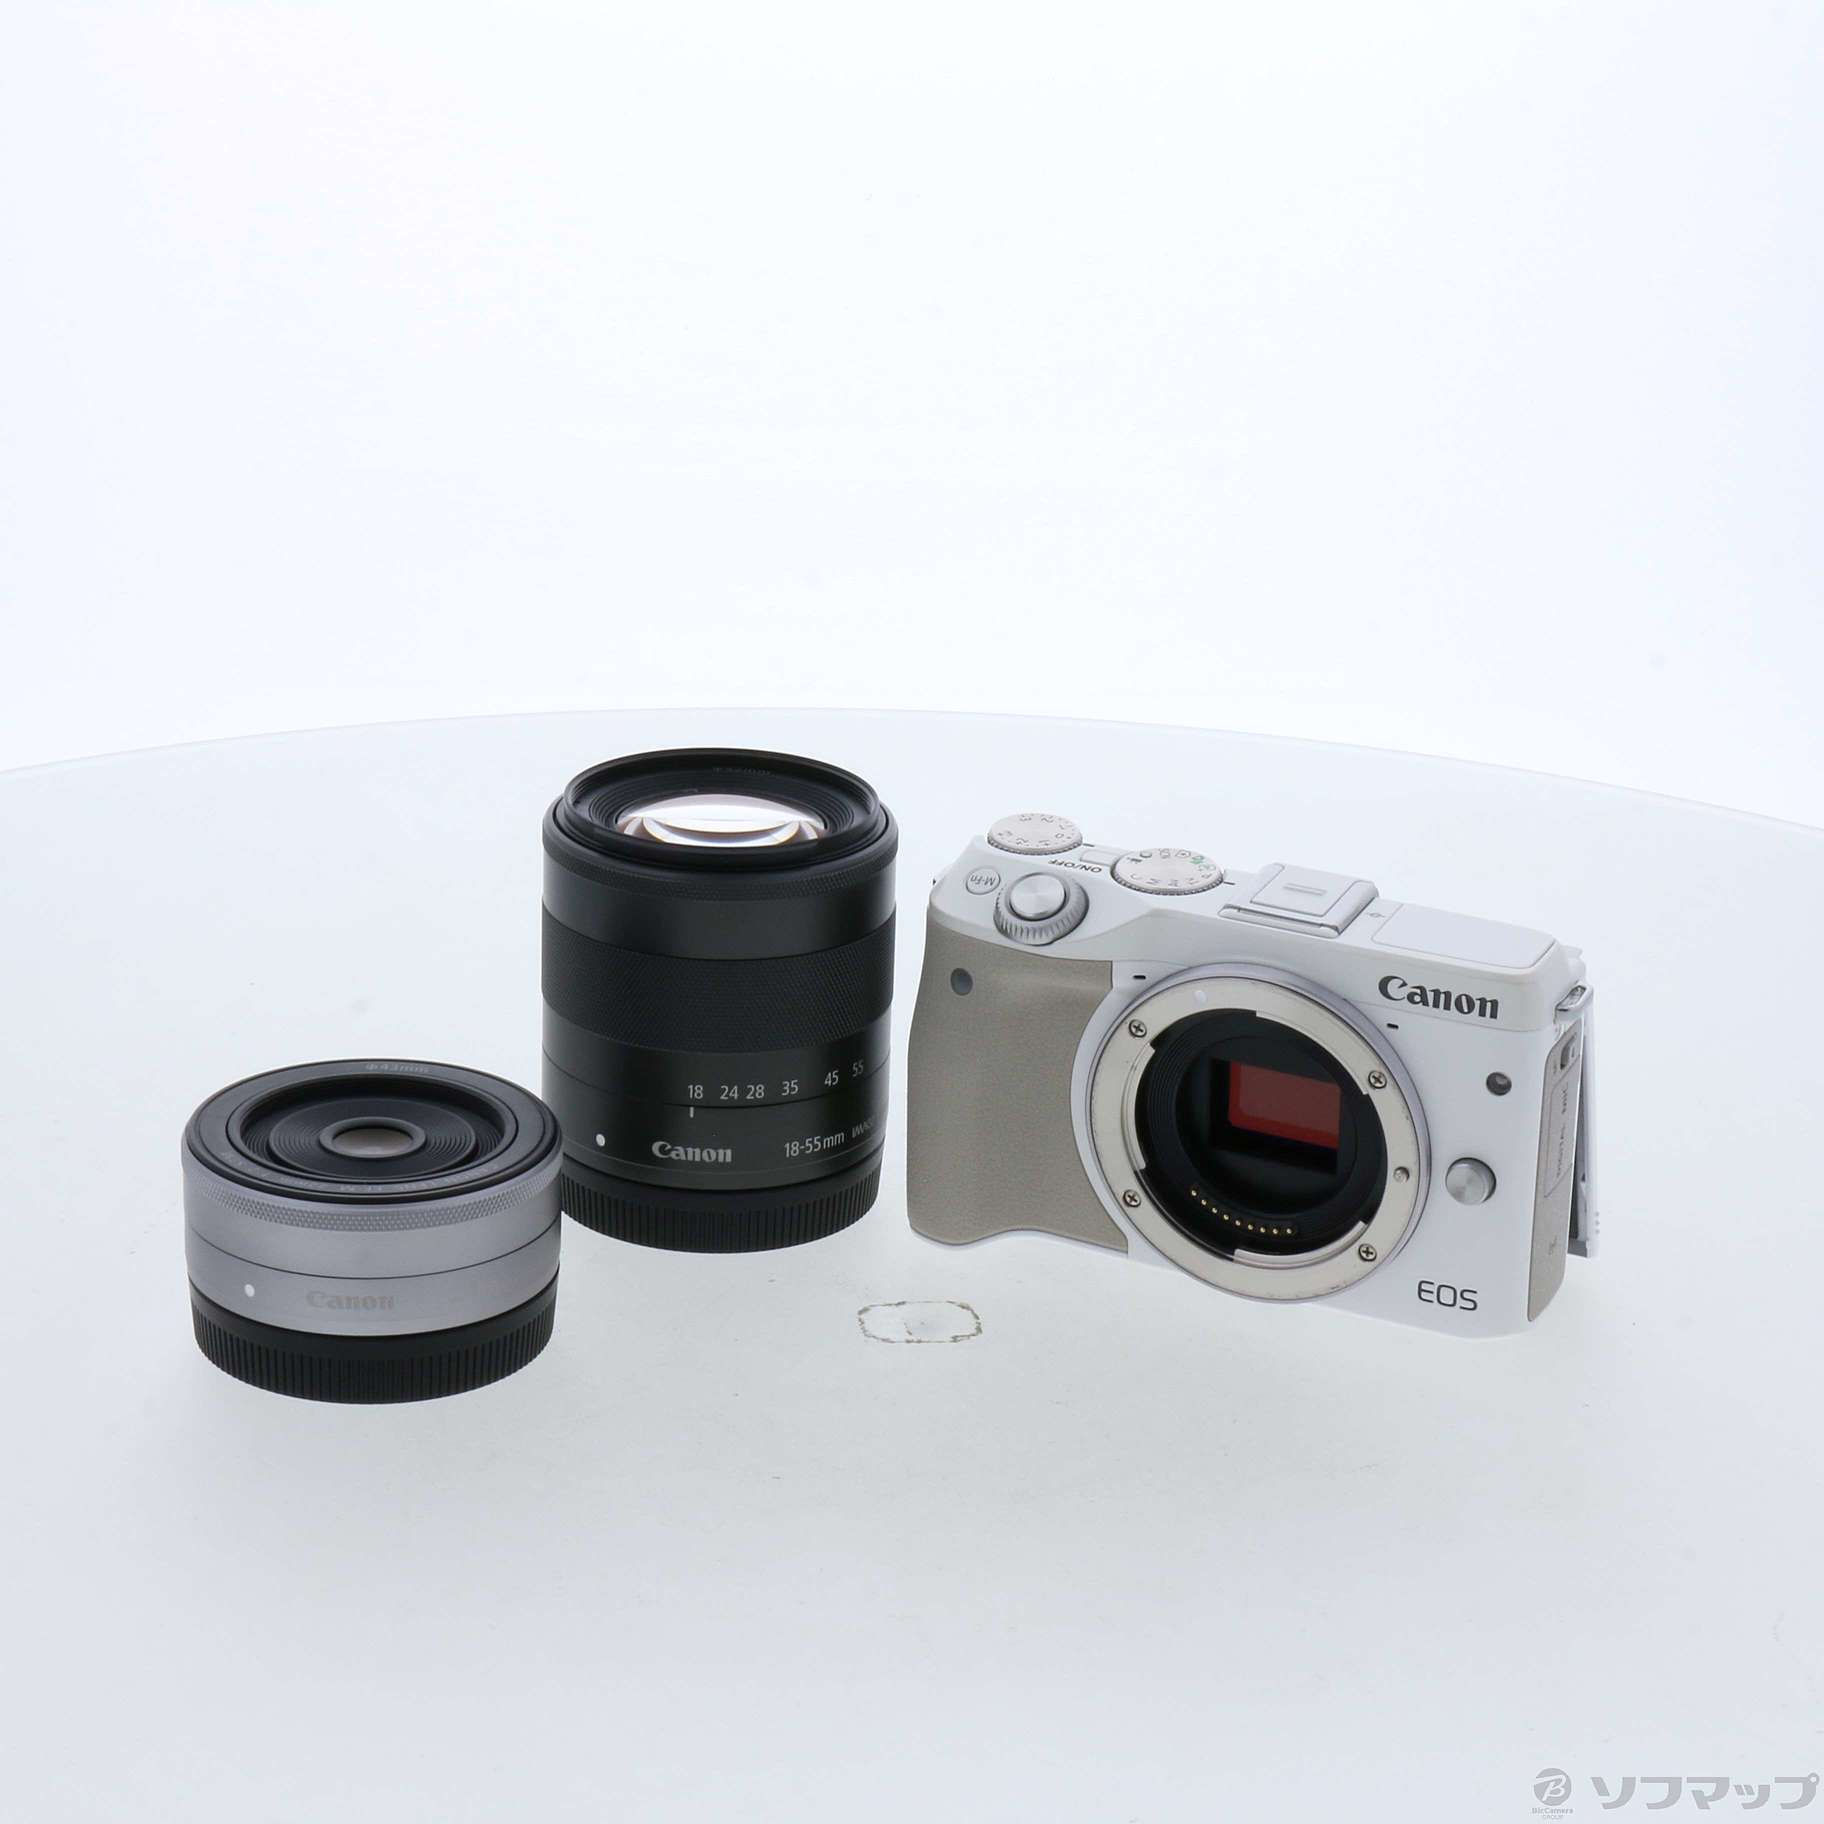 最安価格 Canon ミラーレス一眼カメラ EOS M2 EF-M18-55 IS STM レンズキット(ブラック) EF-M18-55mm F3. 5-5.6 IS STM 付属 EOSM2BK-1855ISSTMLK(中 - その他 - smssvg.org